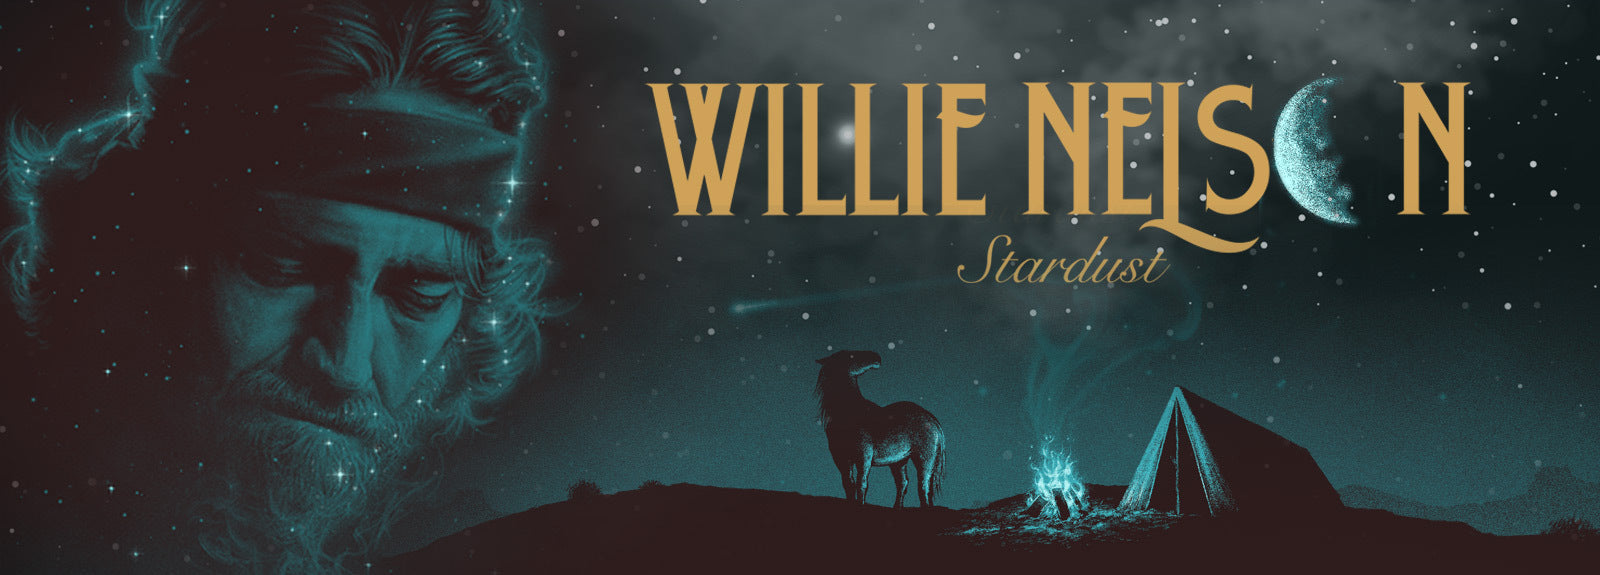 Willie Nelson Stardust